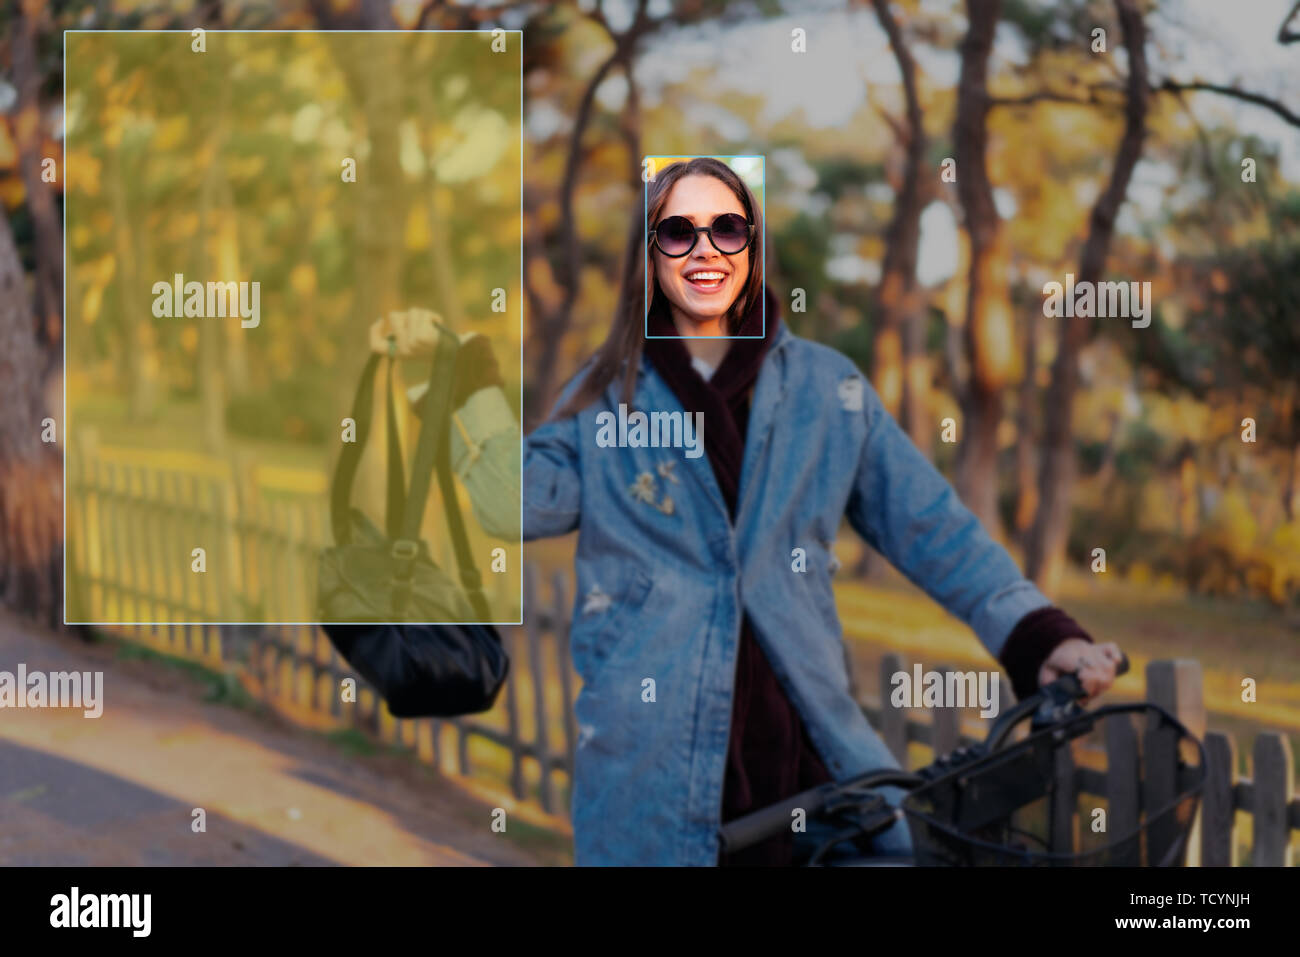 Il riconoscimento del volto in fotografia utilizzando l'intelligenza artificiale Foto Stock